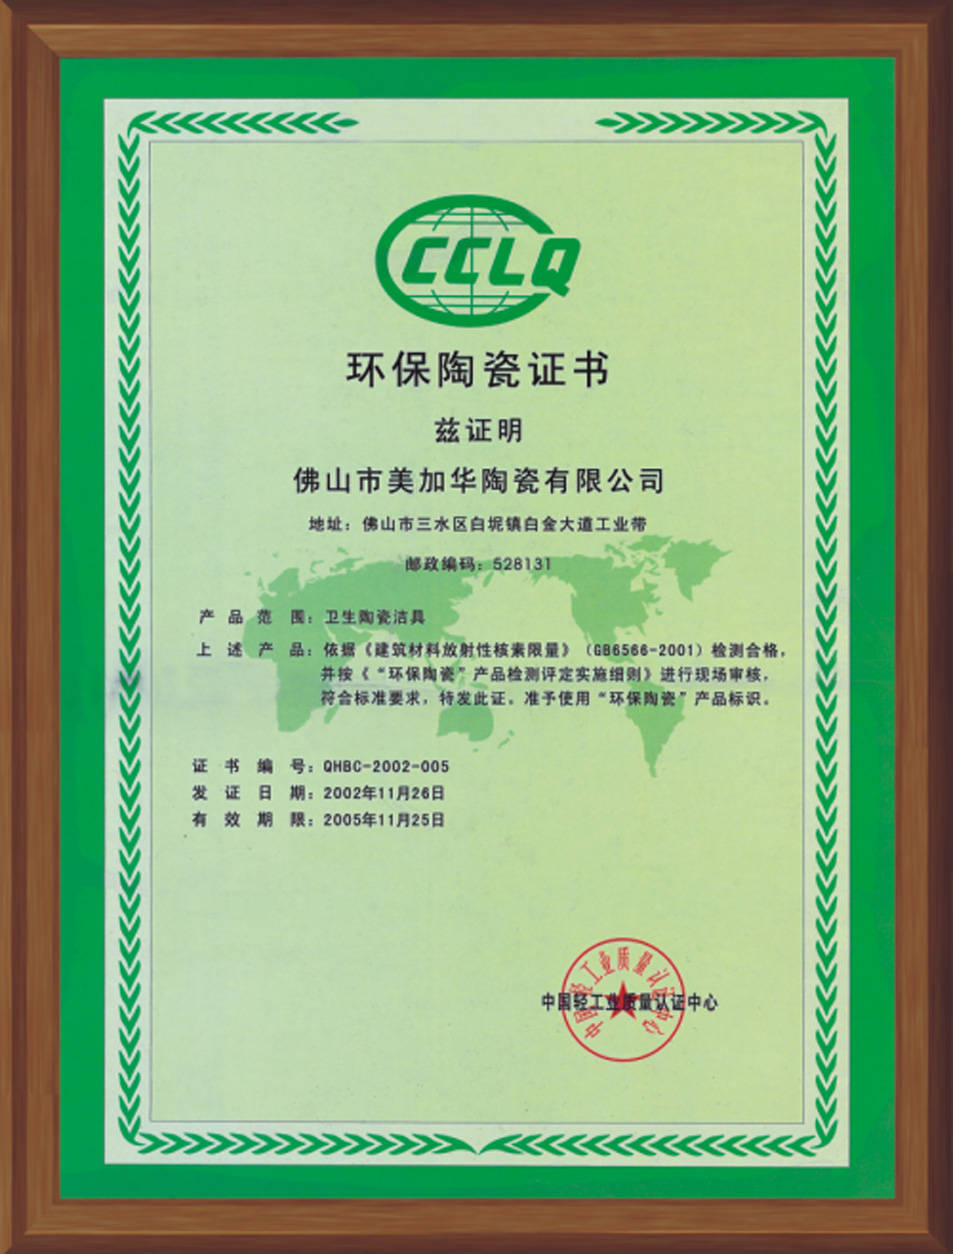 环保陶瓷证书 - 美家建材 - 九正建材网(中国建材第一网)